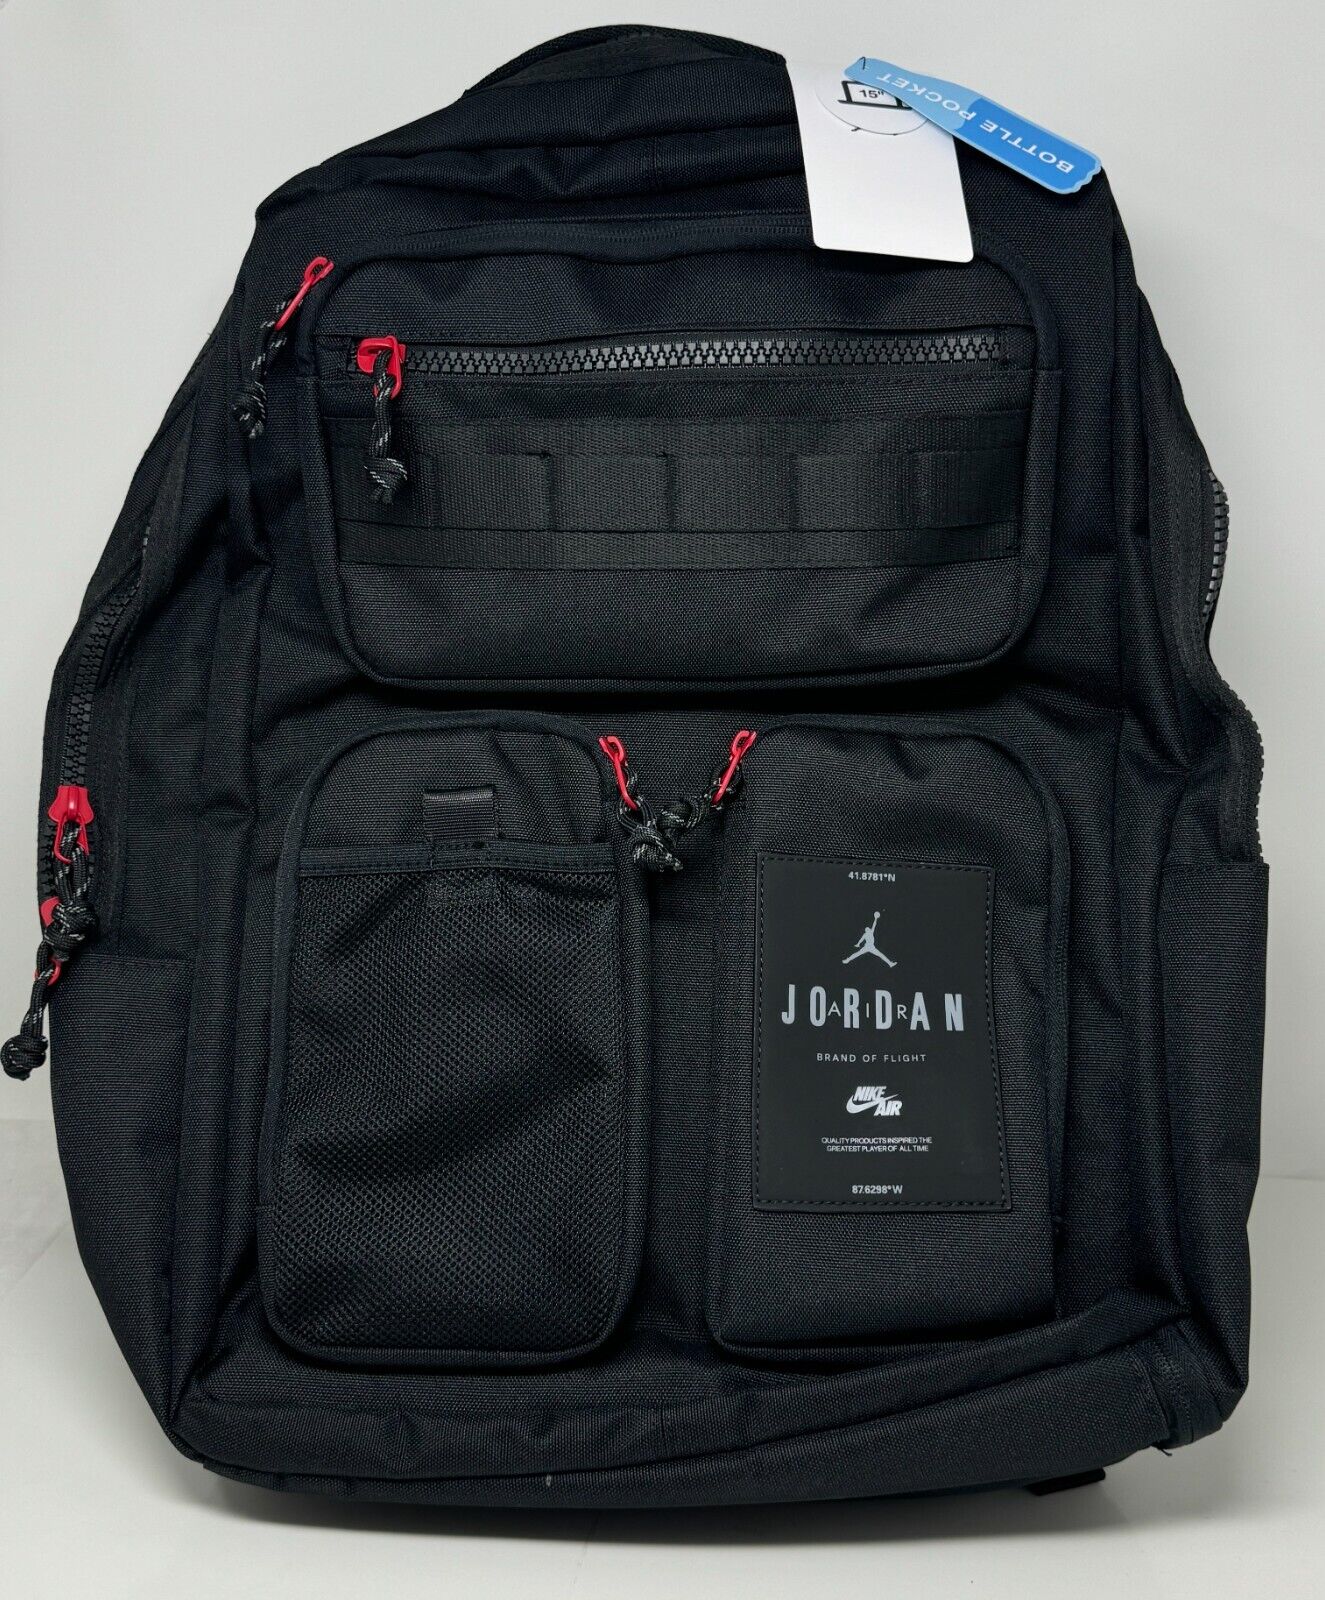 Jordan Air Hesi Backpack Nike App Limited Release Black MA0838 023 MA0838 023